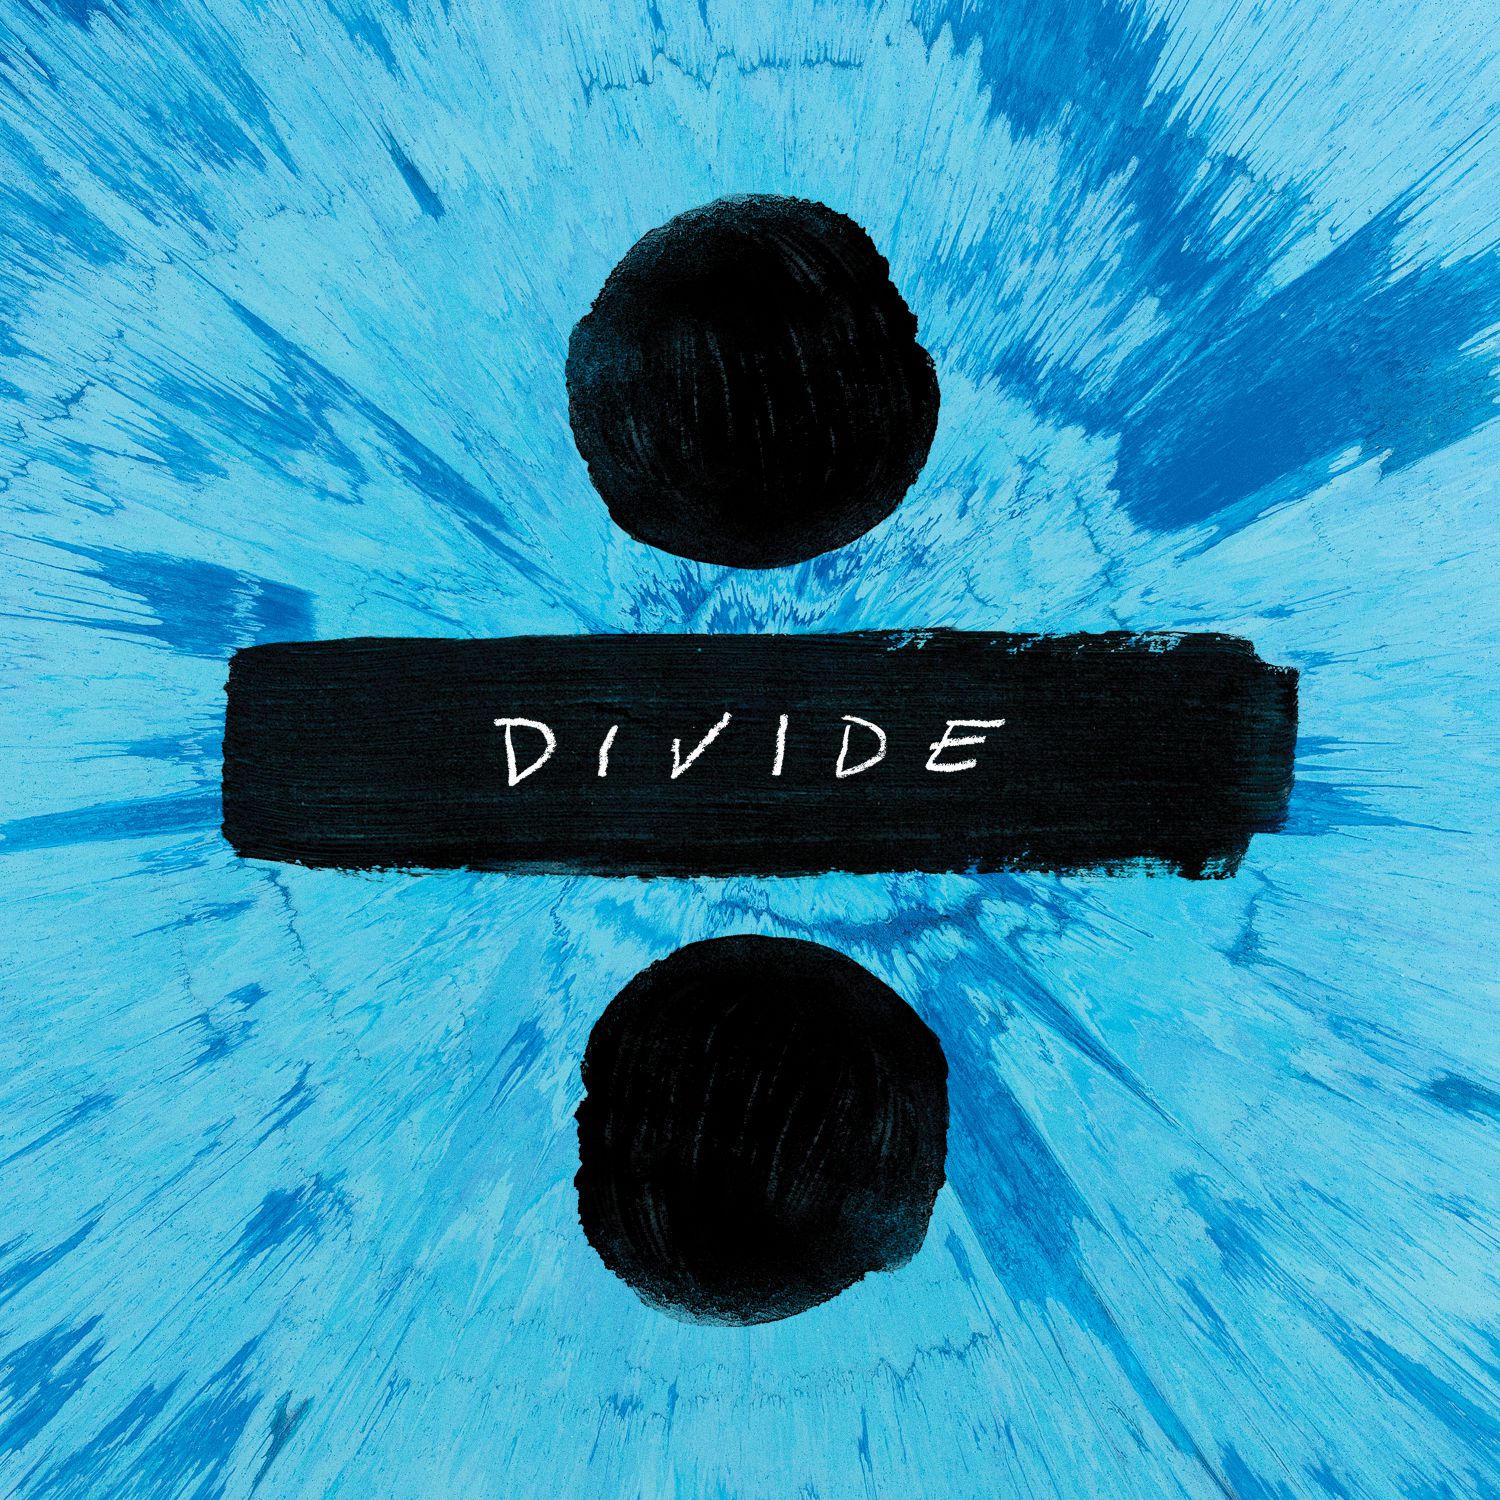 Ed Sheeran - ÷ (Divide) [559 579](2017)